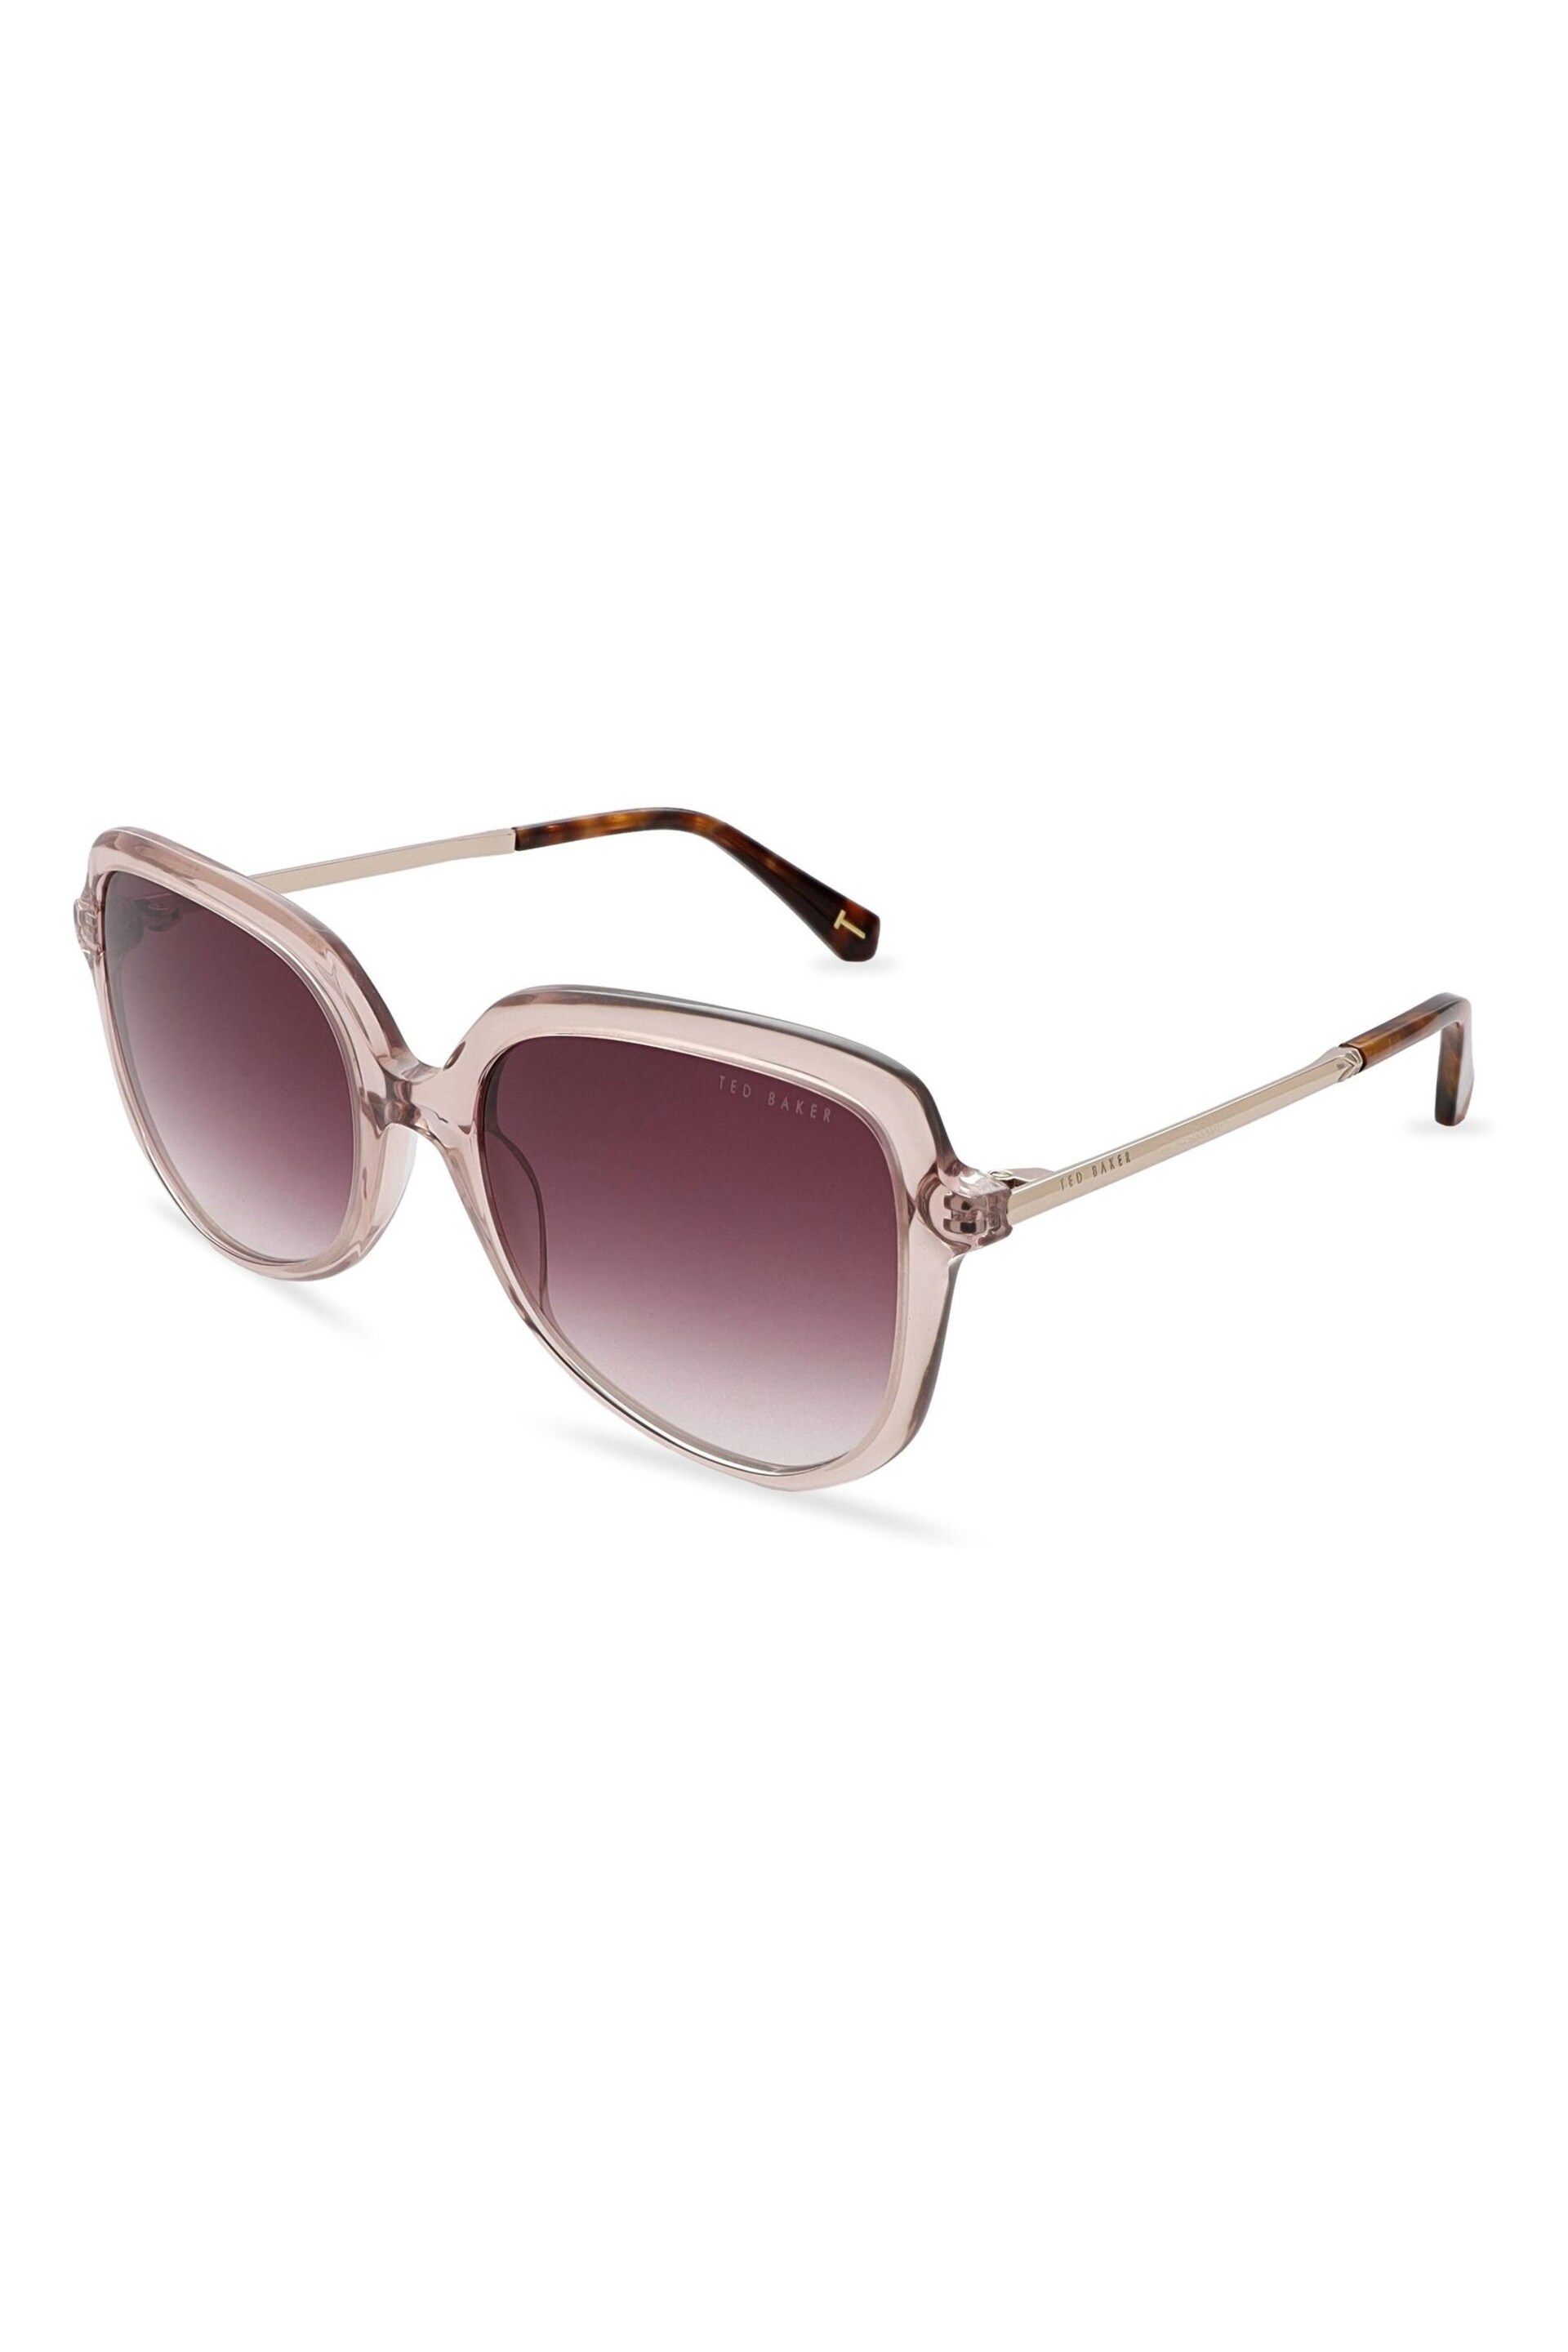 Ted Baker Purple Kiera Sunglasses - Image 1 of 5